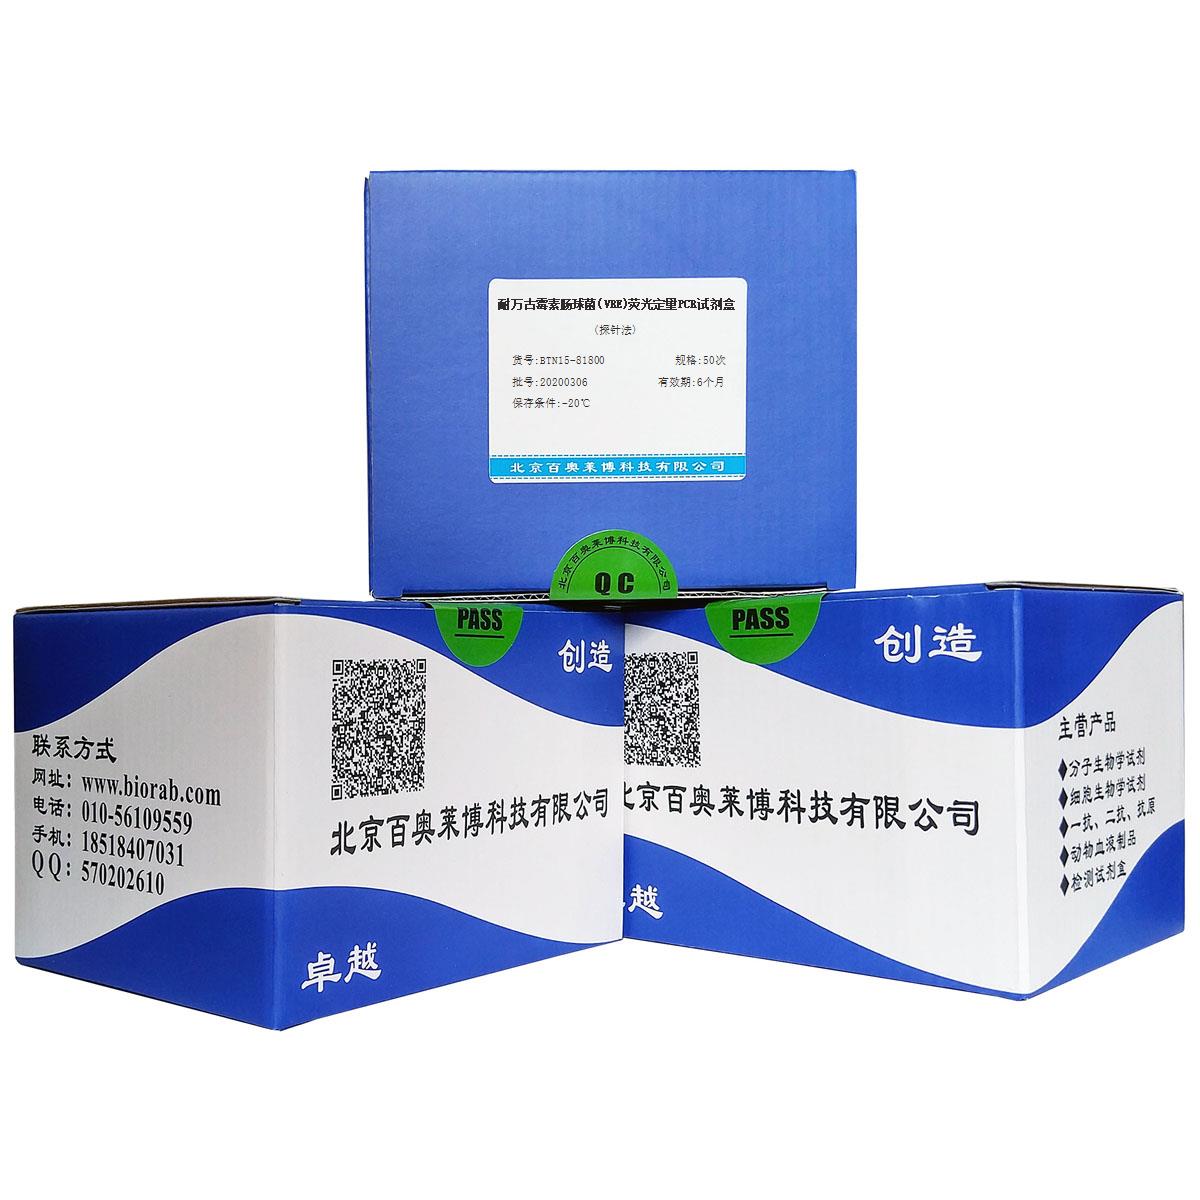 耐万古霉素肠球菌(VRE)荧光定量PCR试剂盒(探针法)